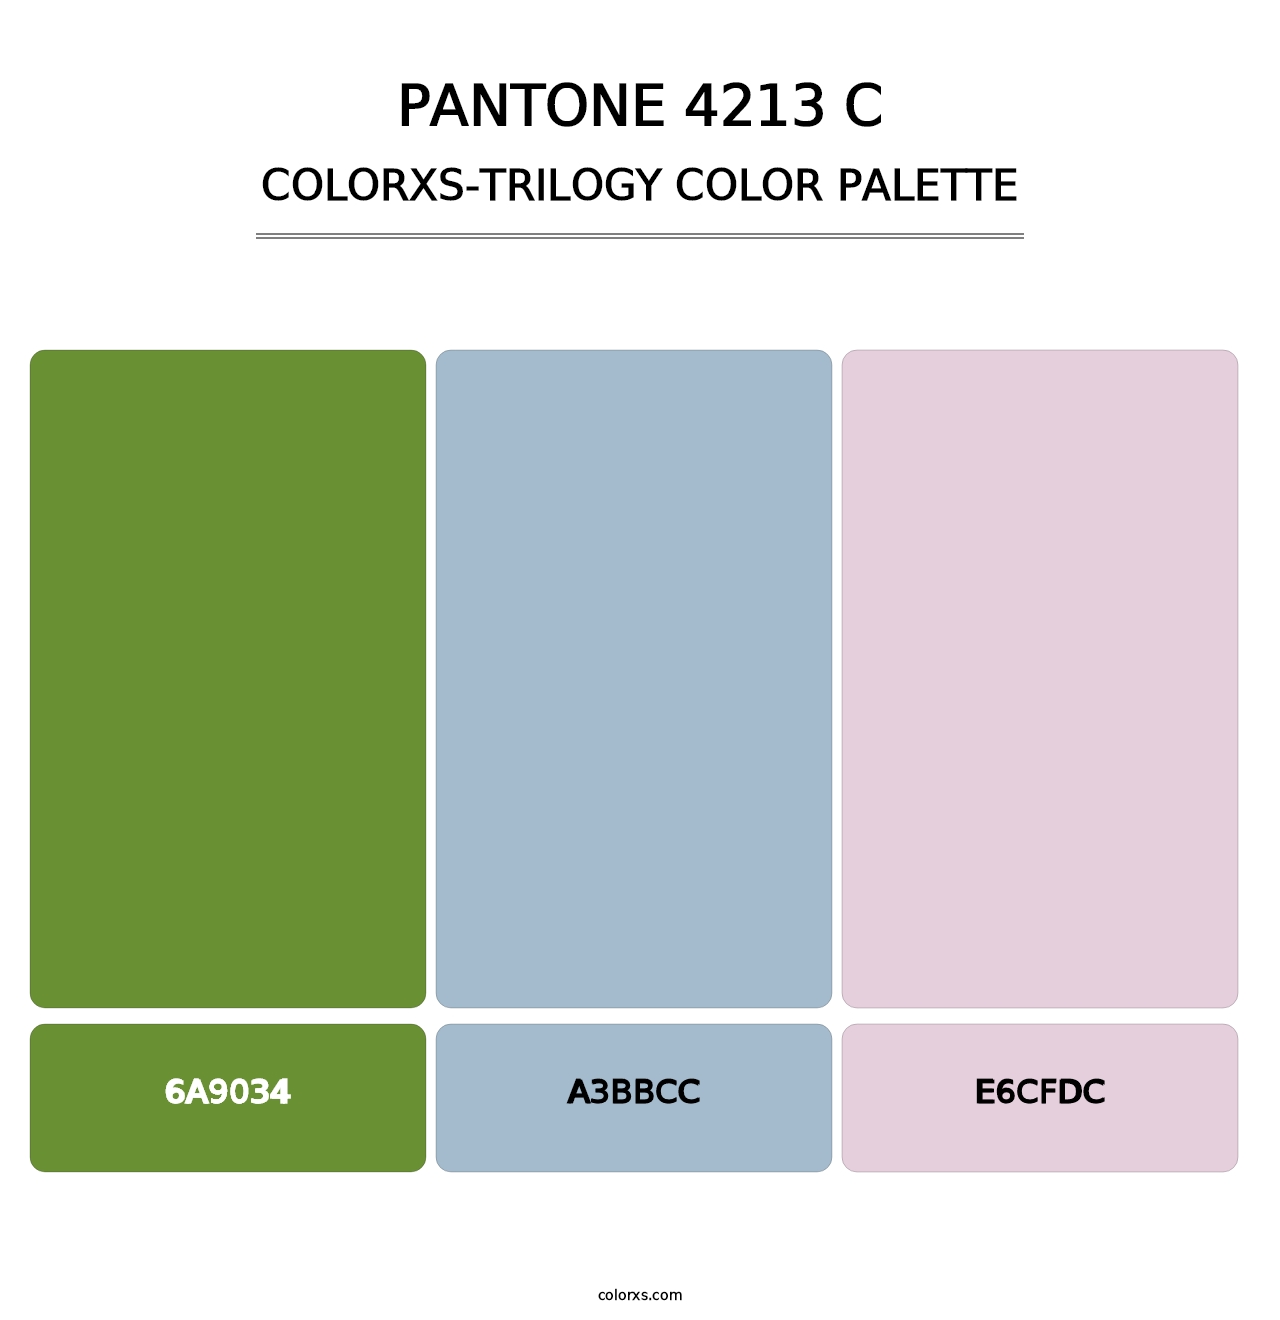 PANTONE 4213 C - Colorxs Trilogy Palette